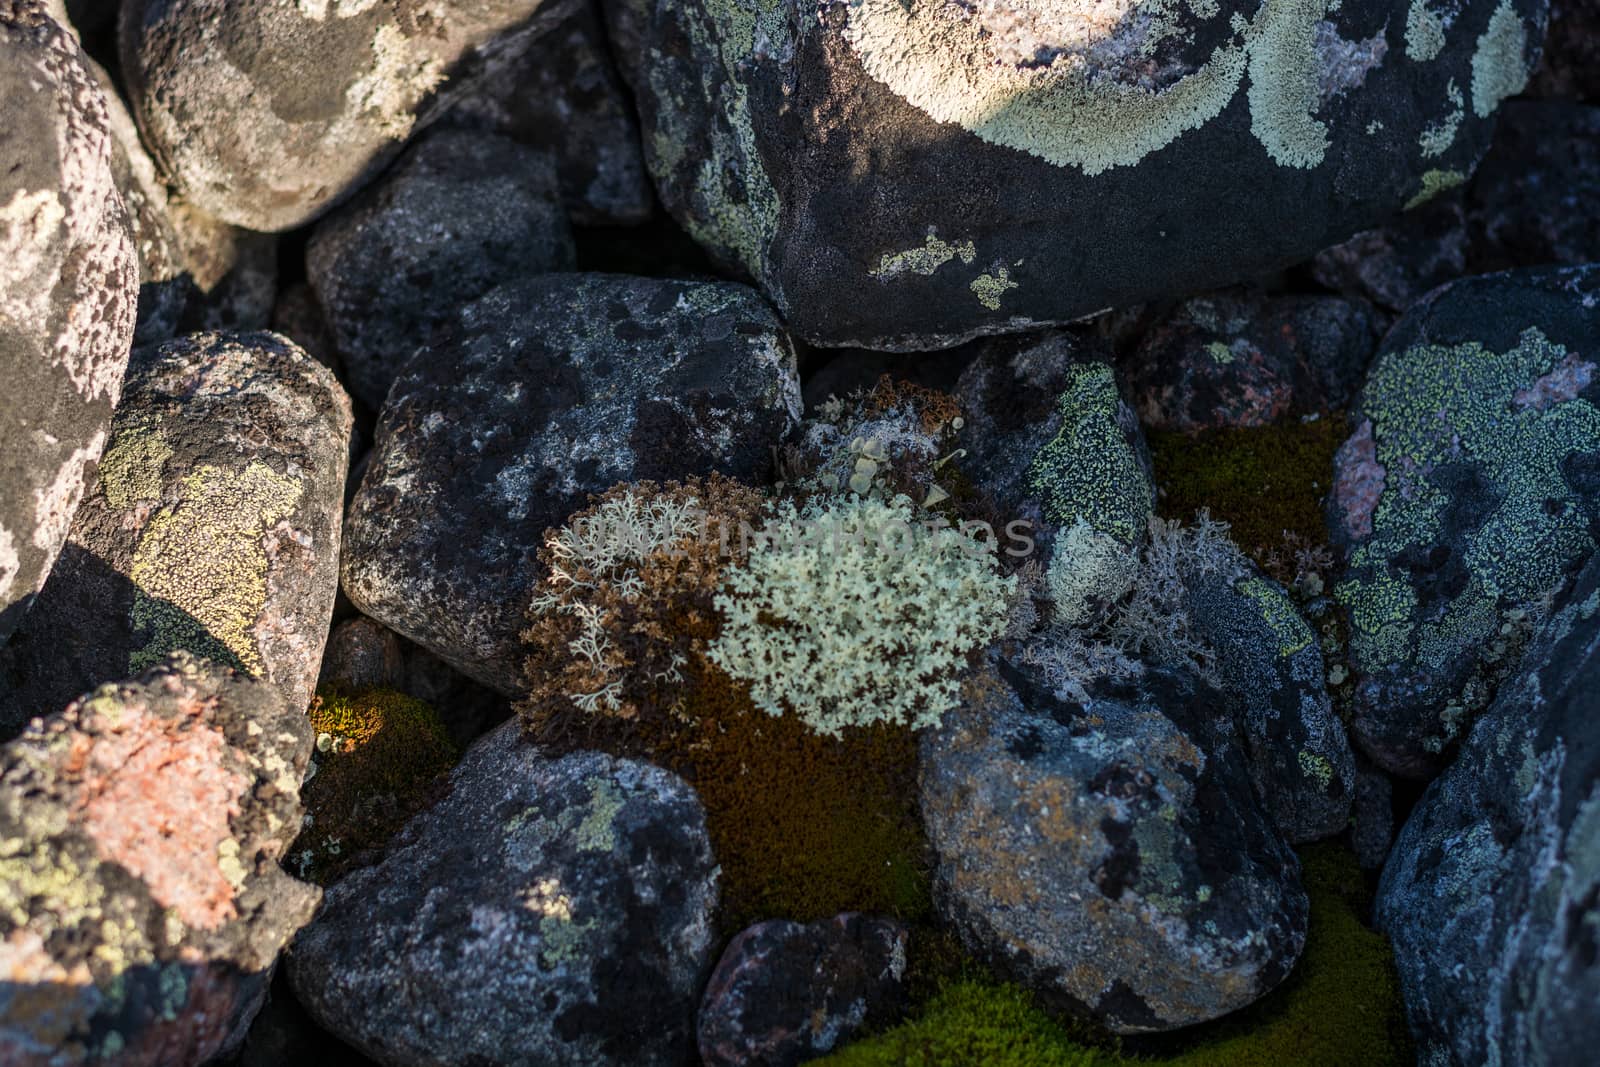 Lichens enveloping round stones. by laihio